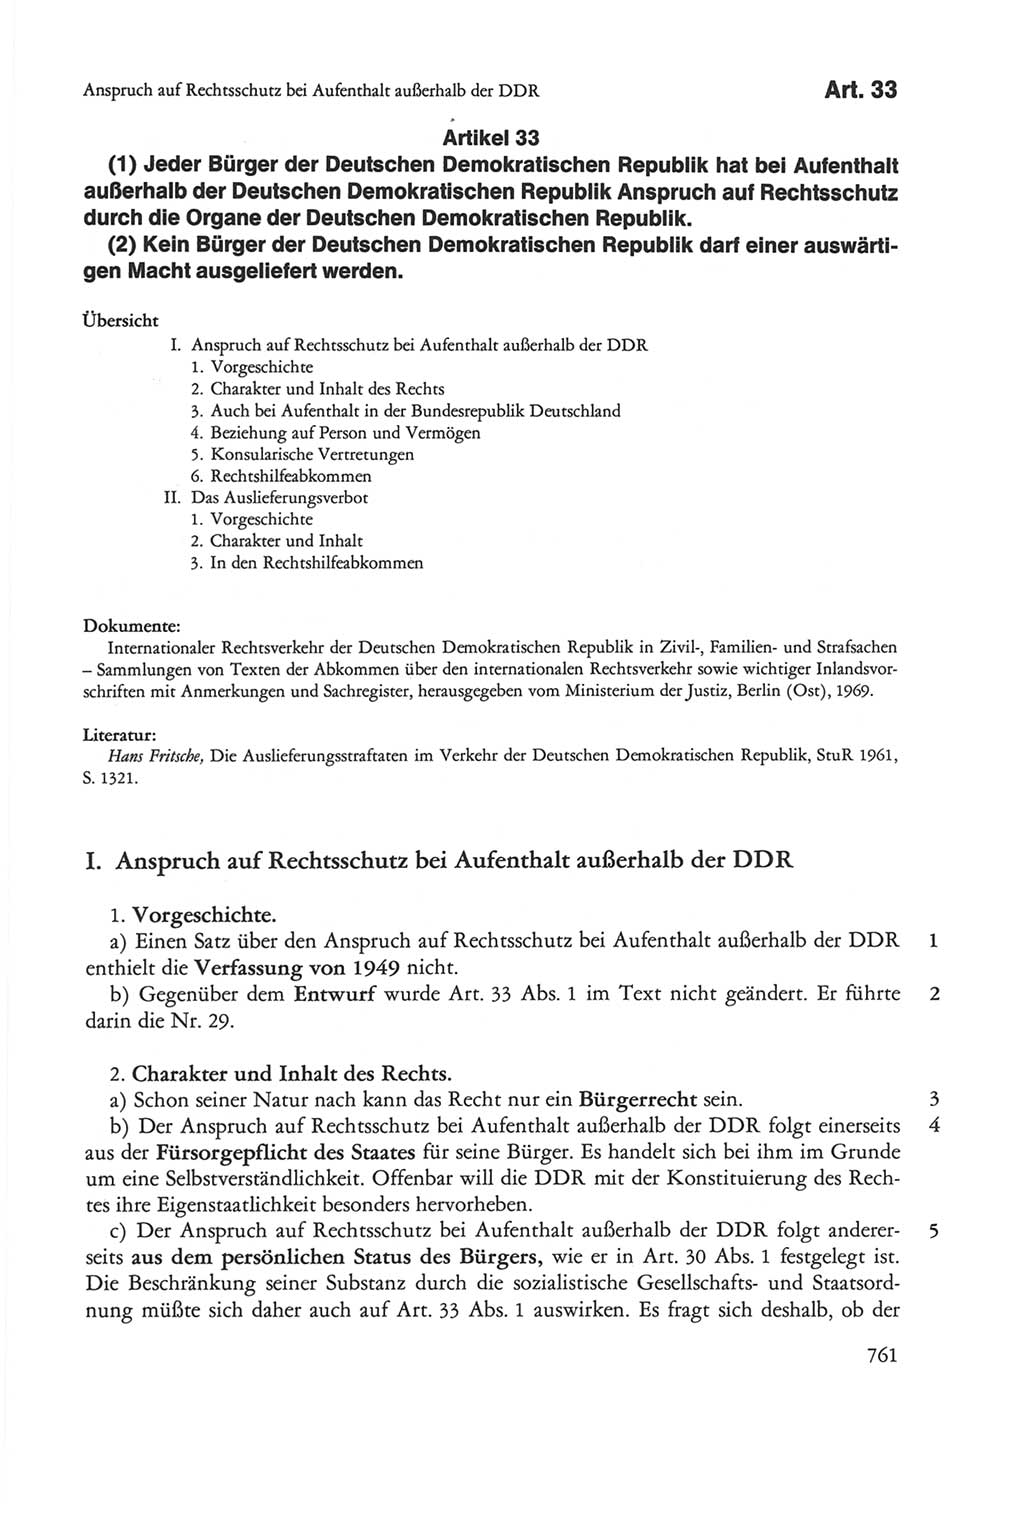 Die sozialistische Verfassung der Deutschen Demokratischen Republik (DDR), Kommentar mit einem Nachtrag 1997, Seite 761 (Soz. Verf. DDR Komm. Nachtr. 1997, S. 761)